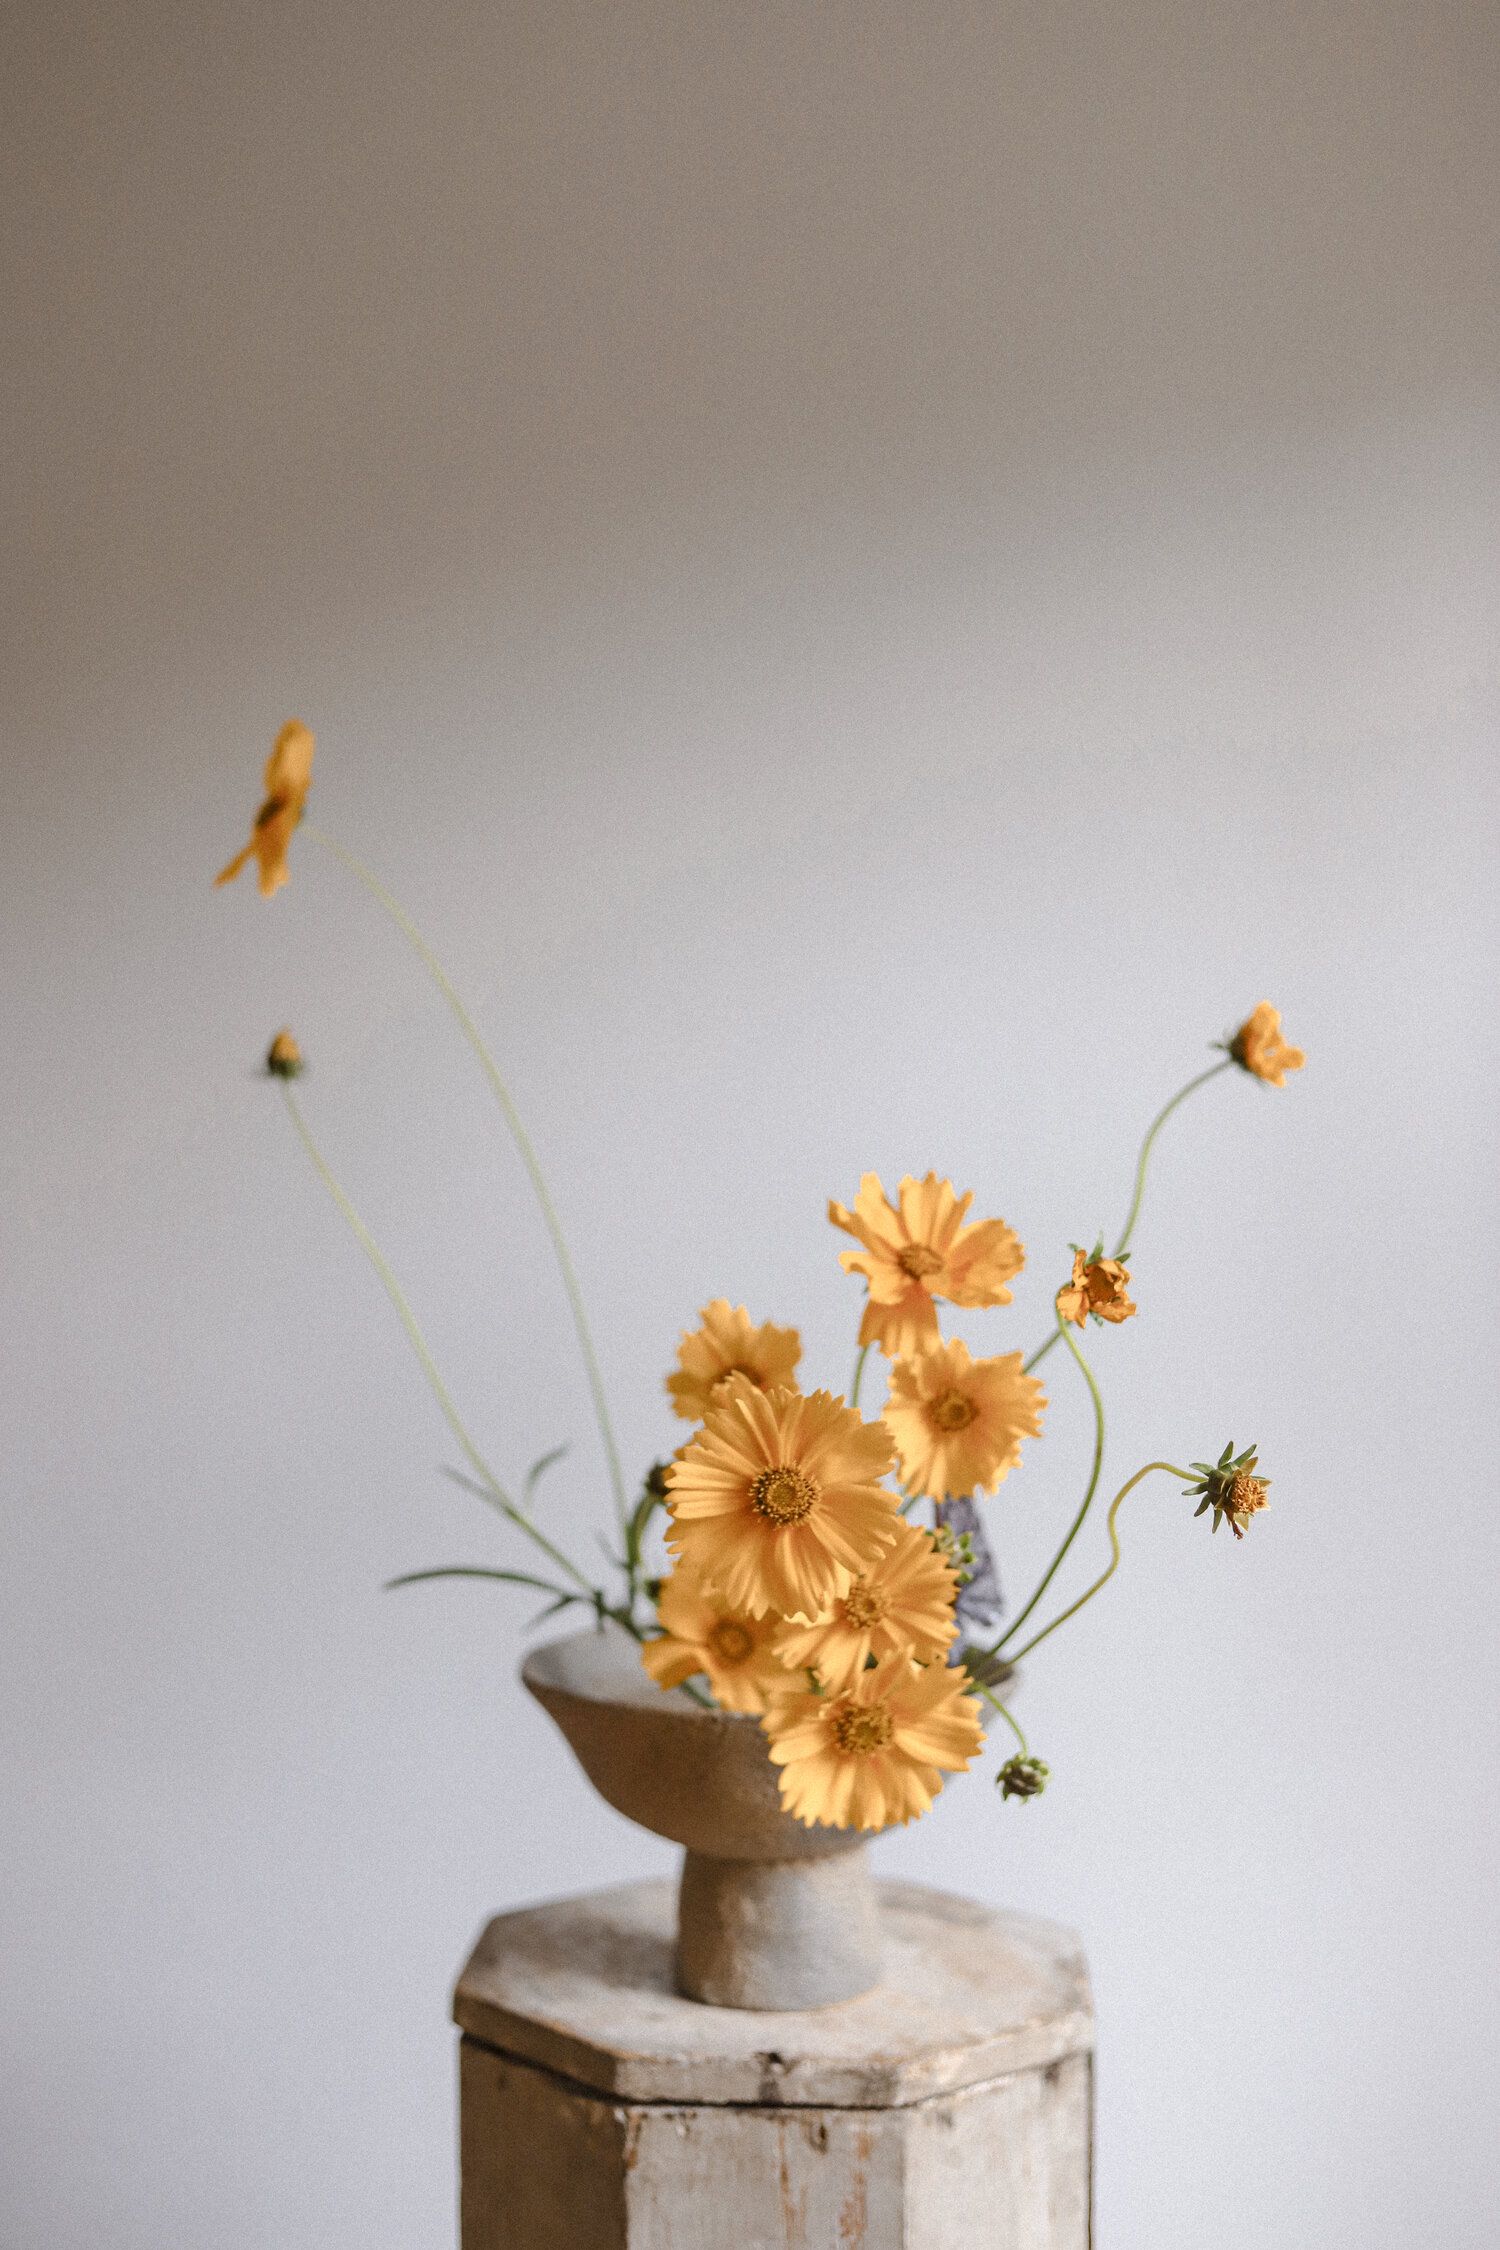 Daisy Ikebana floral arrangement in gold